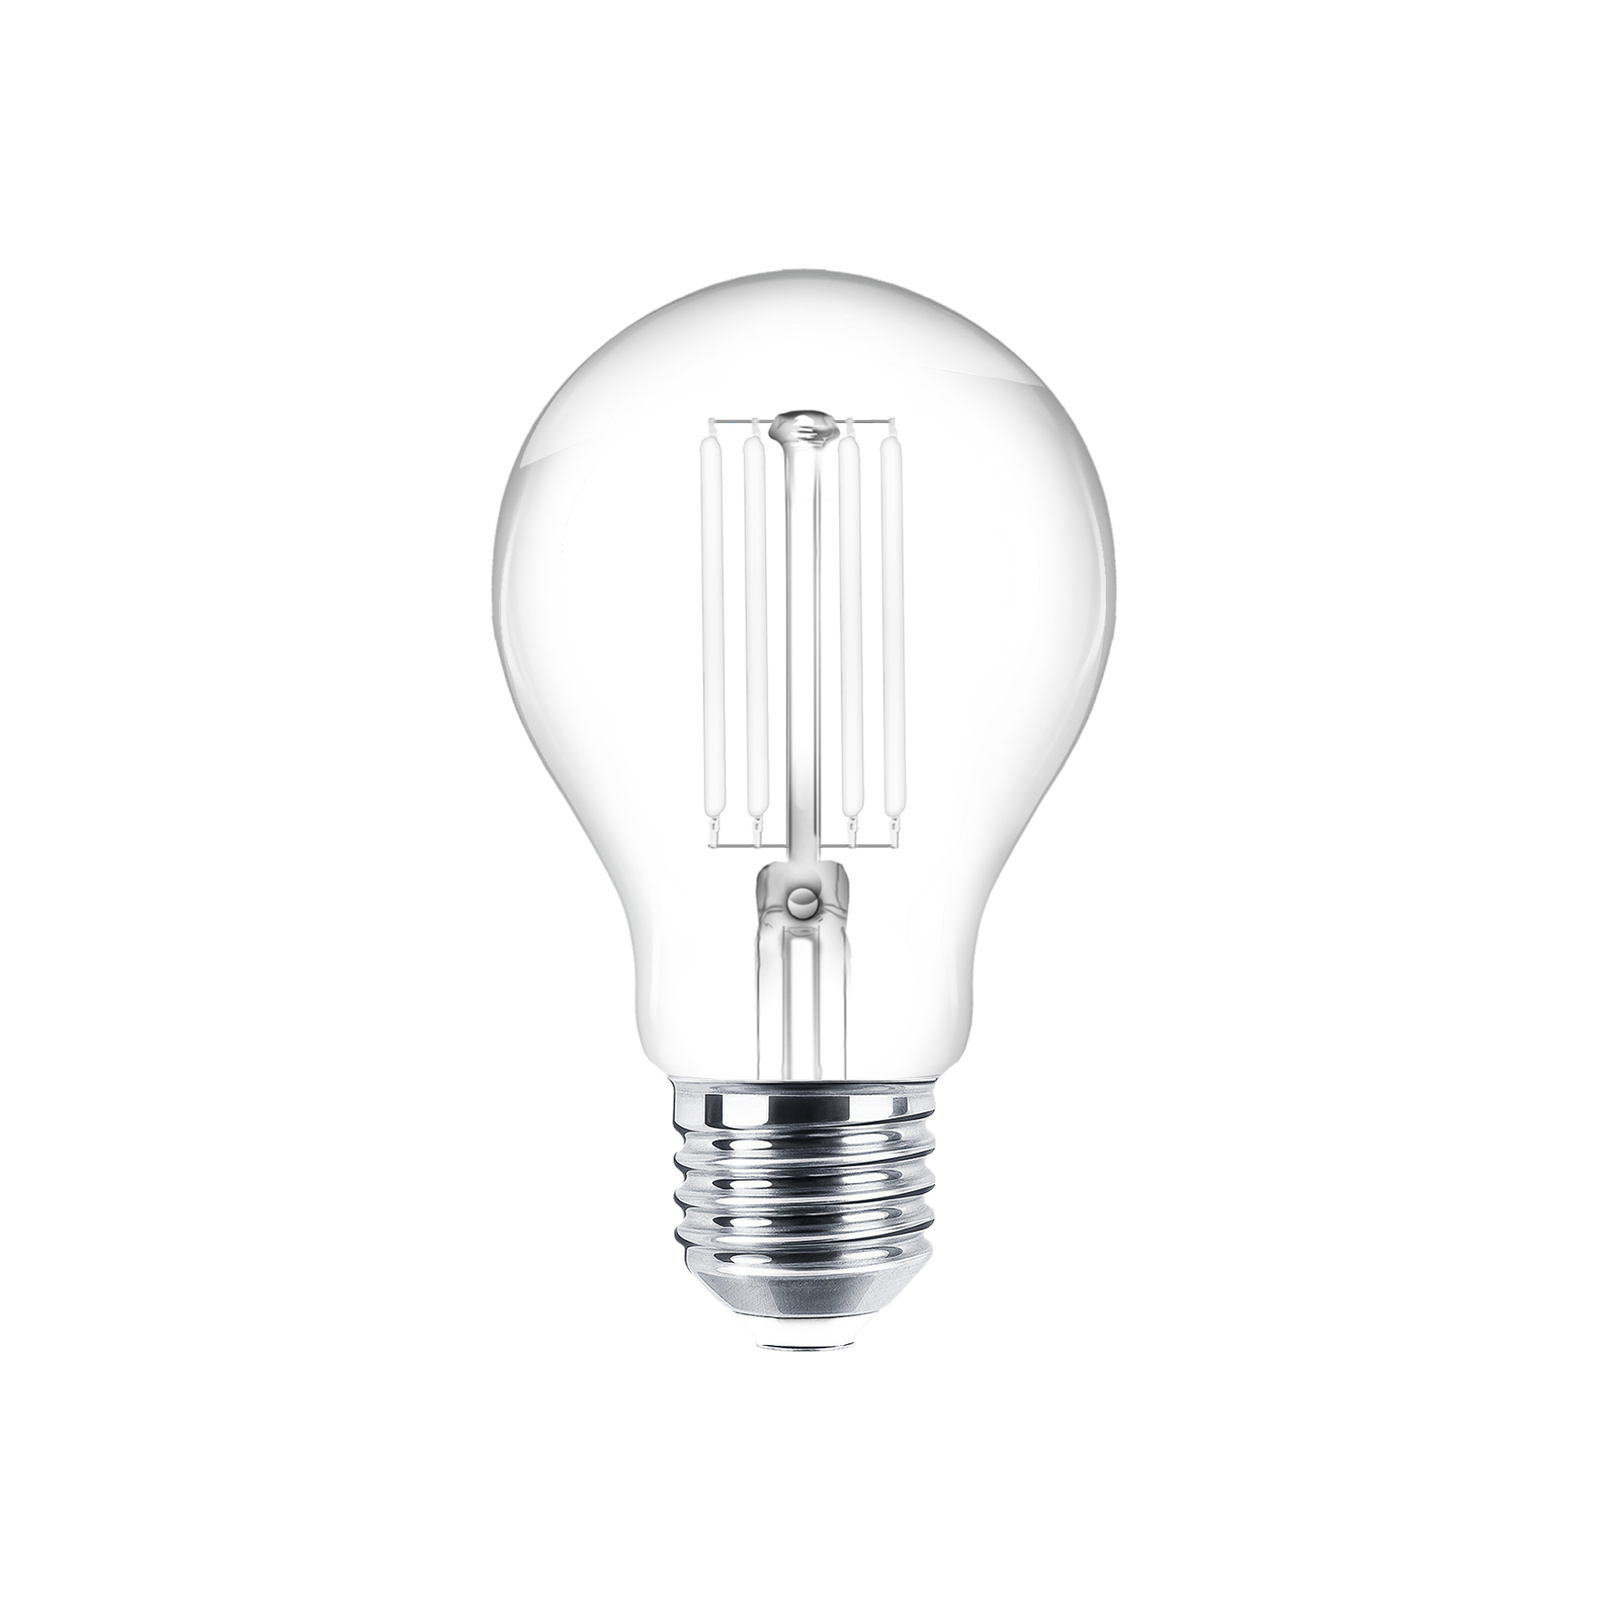 LED bulb Filament E27 set of 3 7W 806 lm clear 2,700K